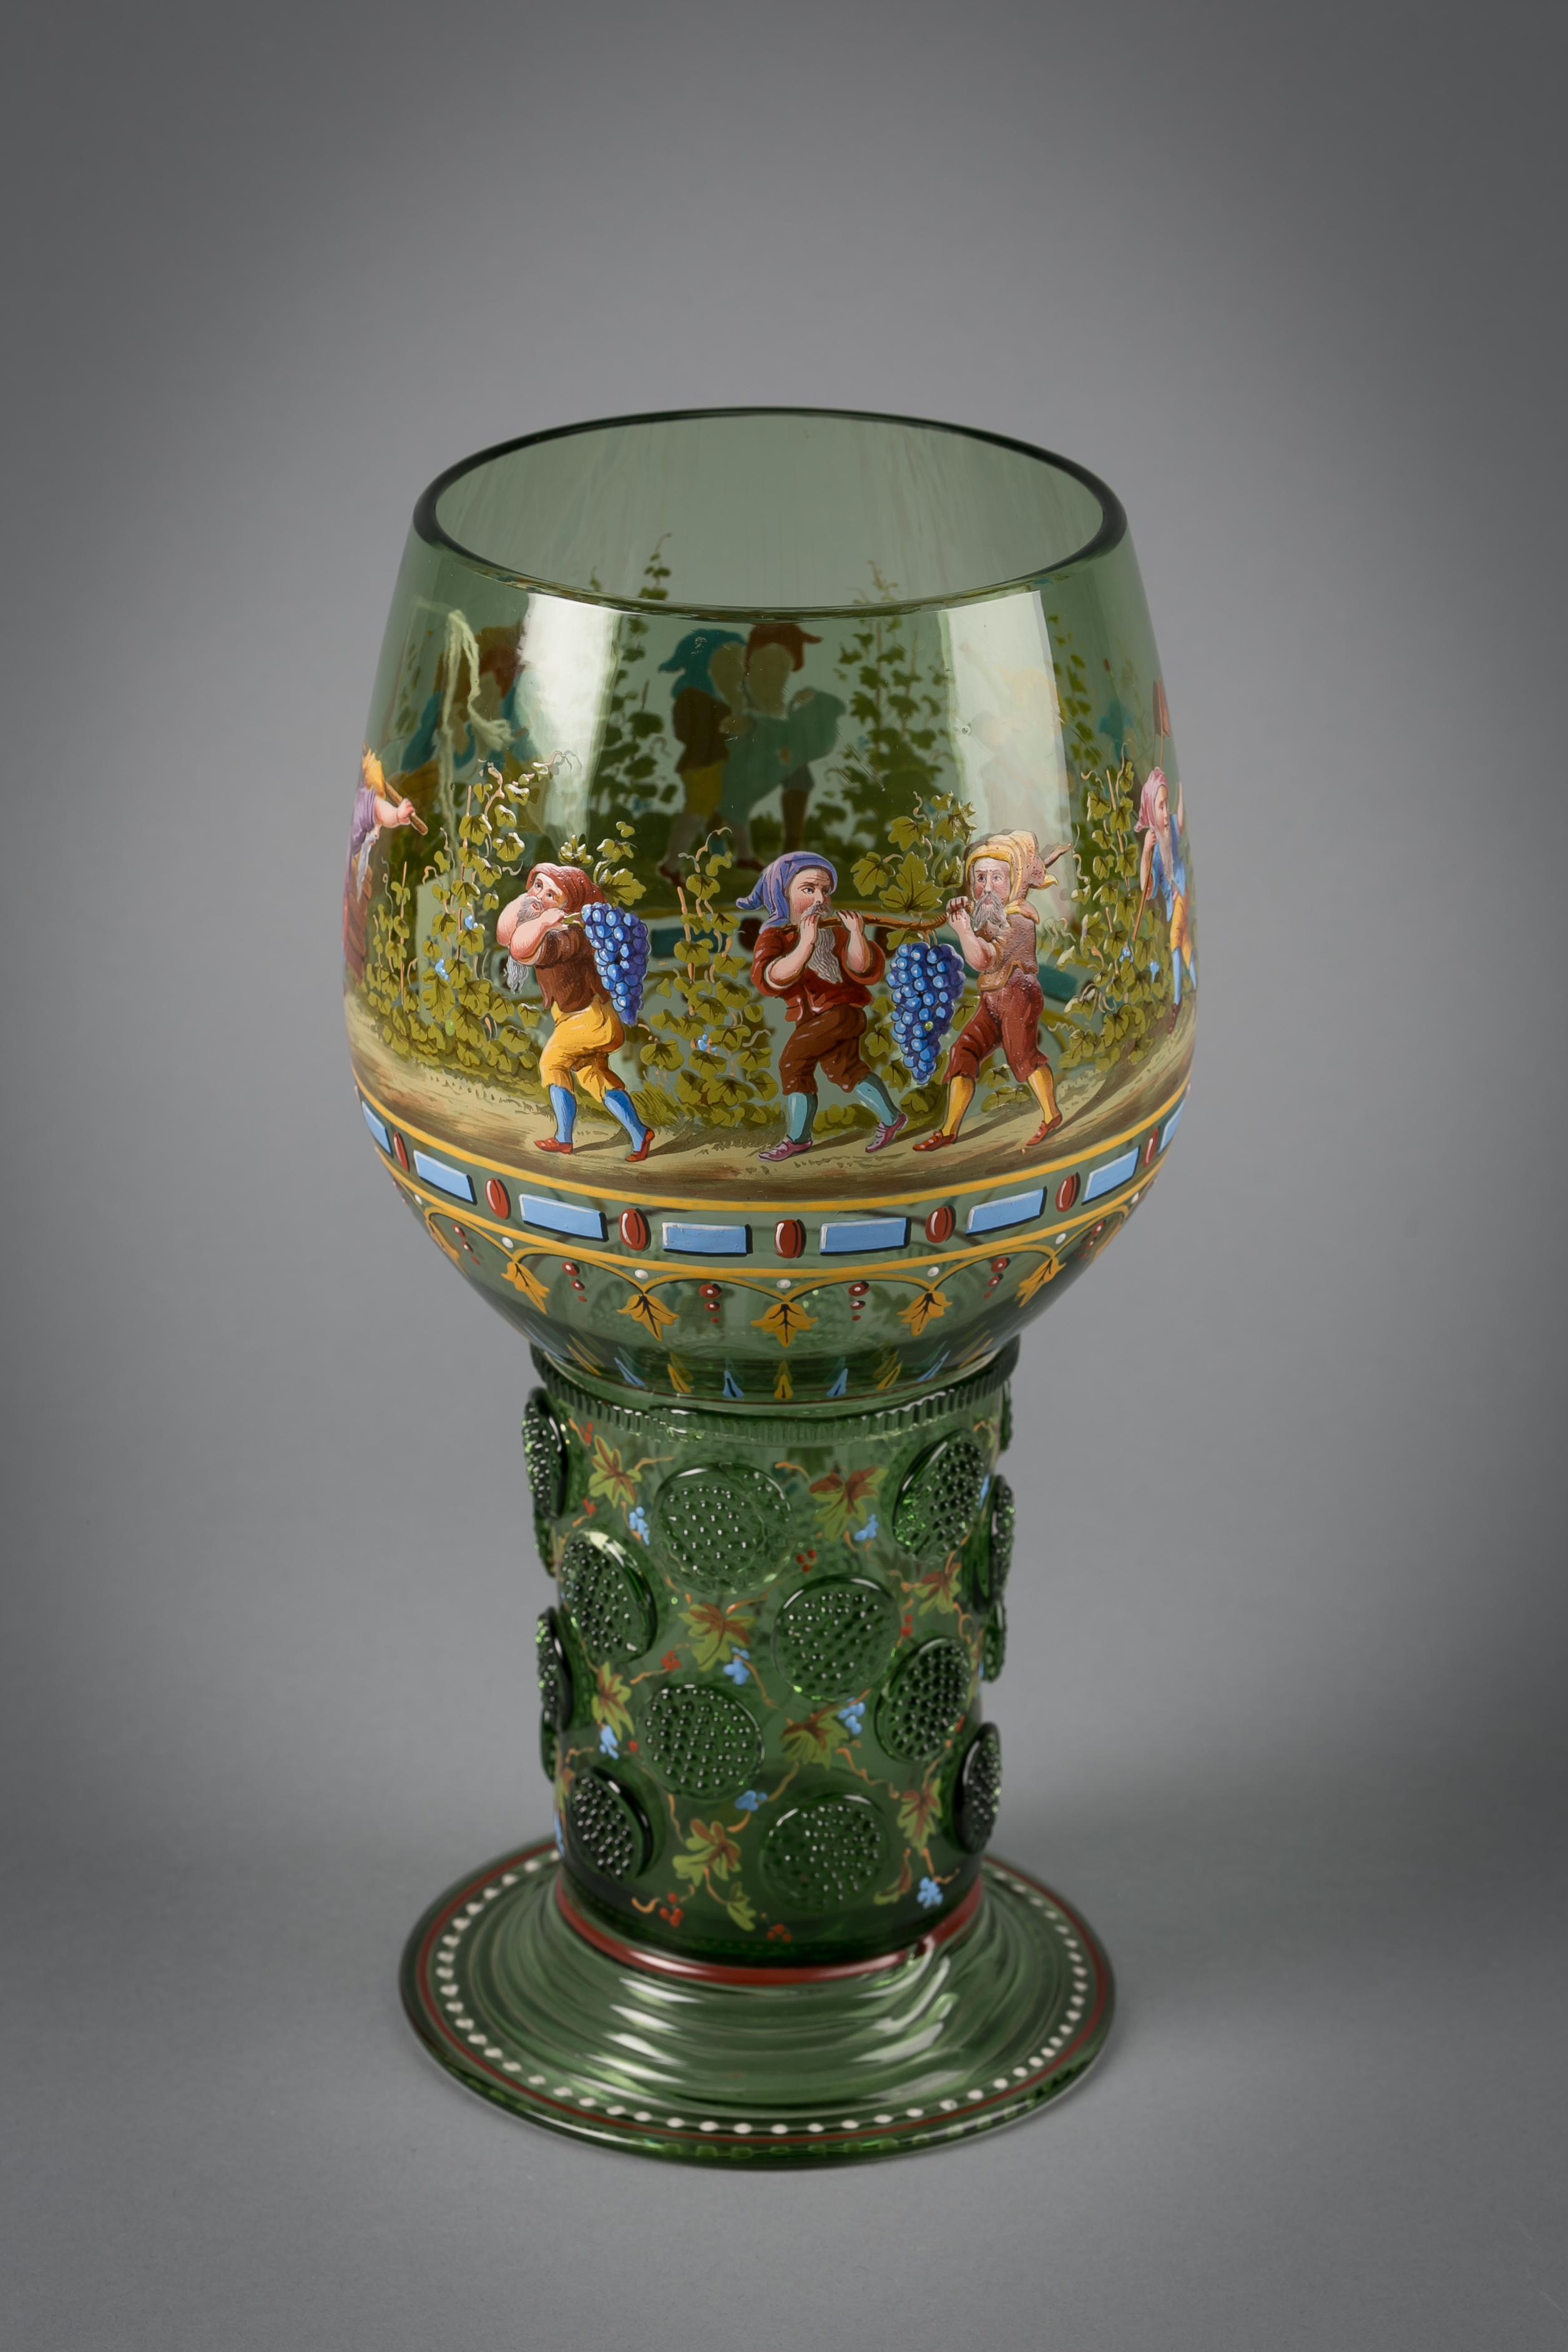 Le verre Roemer est peint avec des nains en train de récolter. Marqué du monogramme JLL en émail blanc.